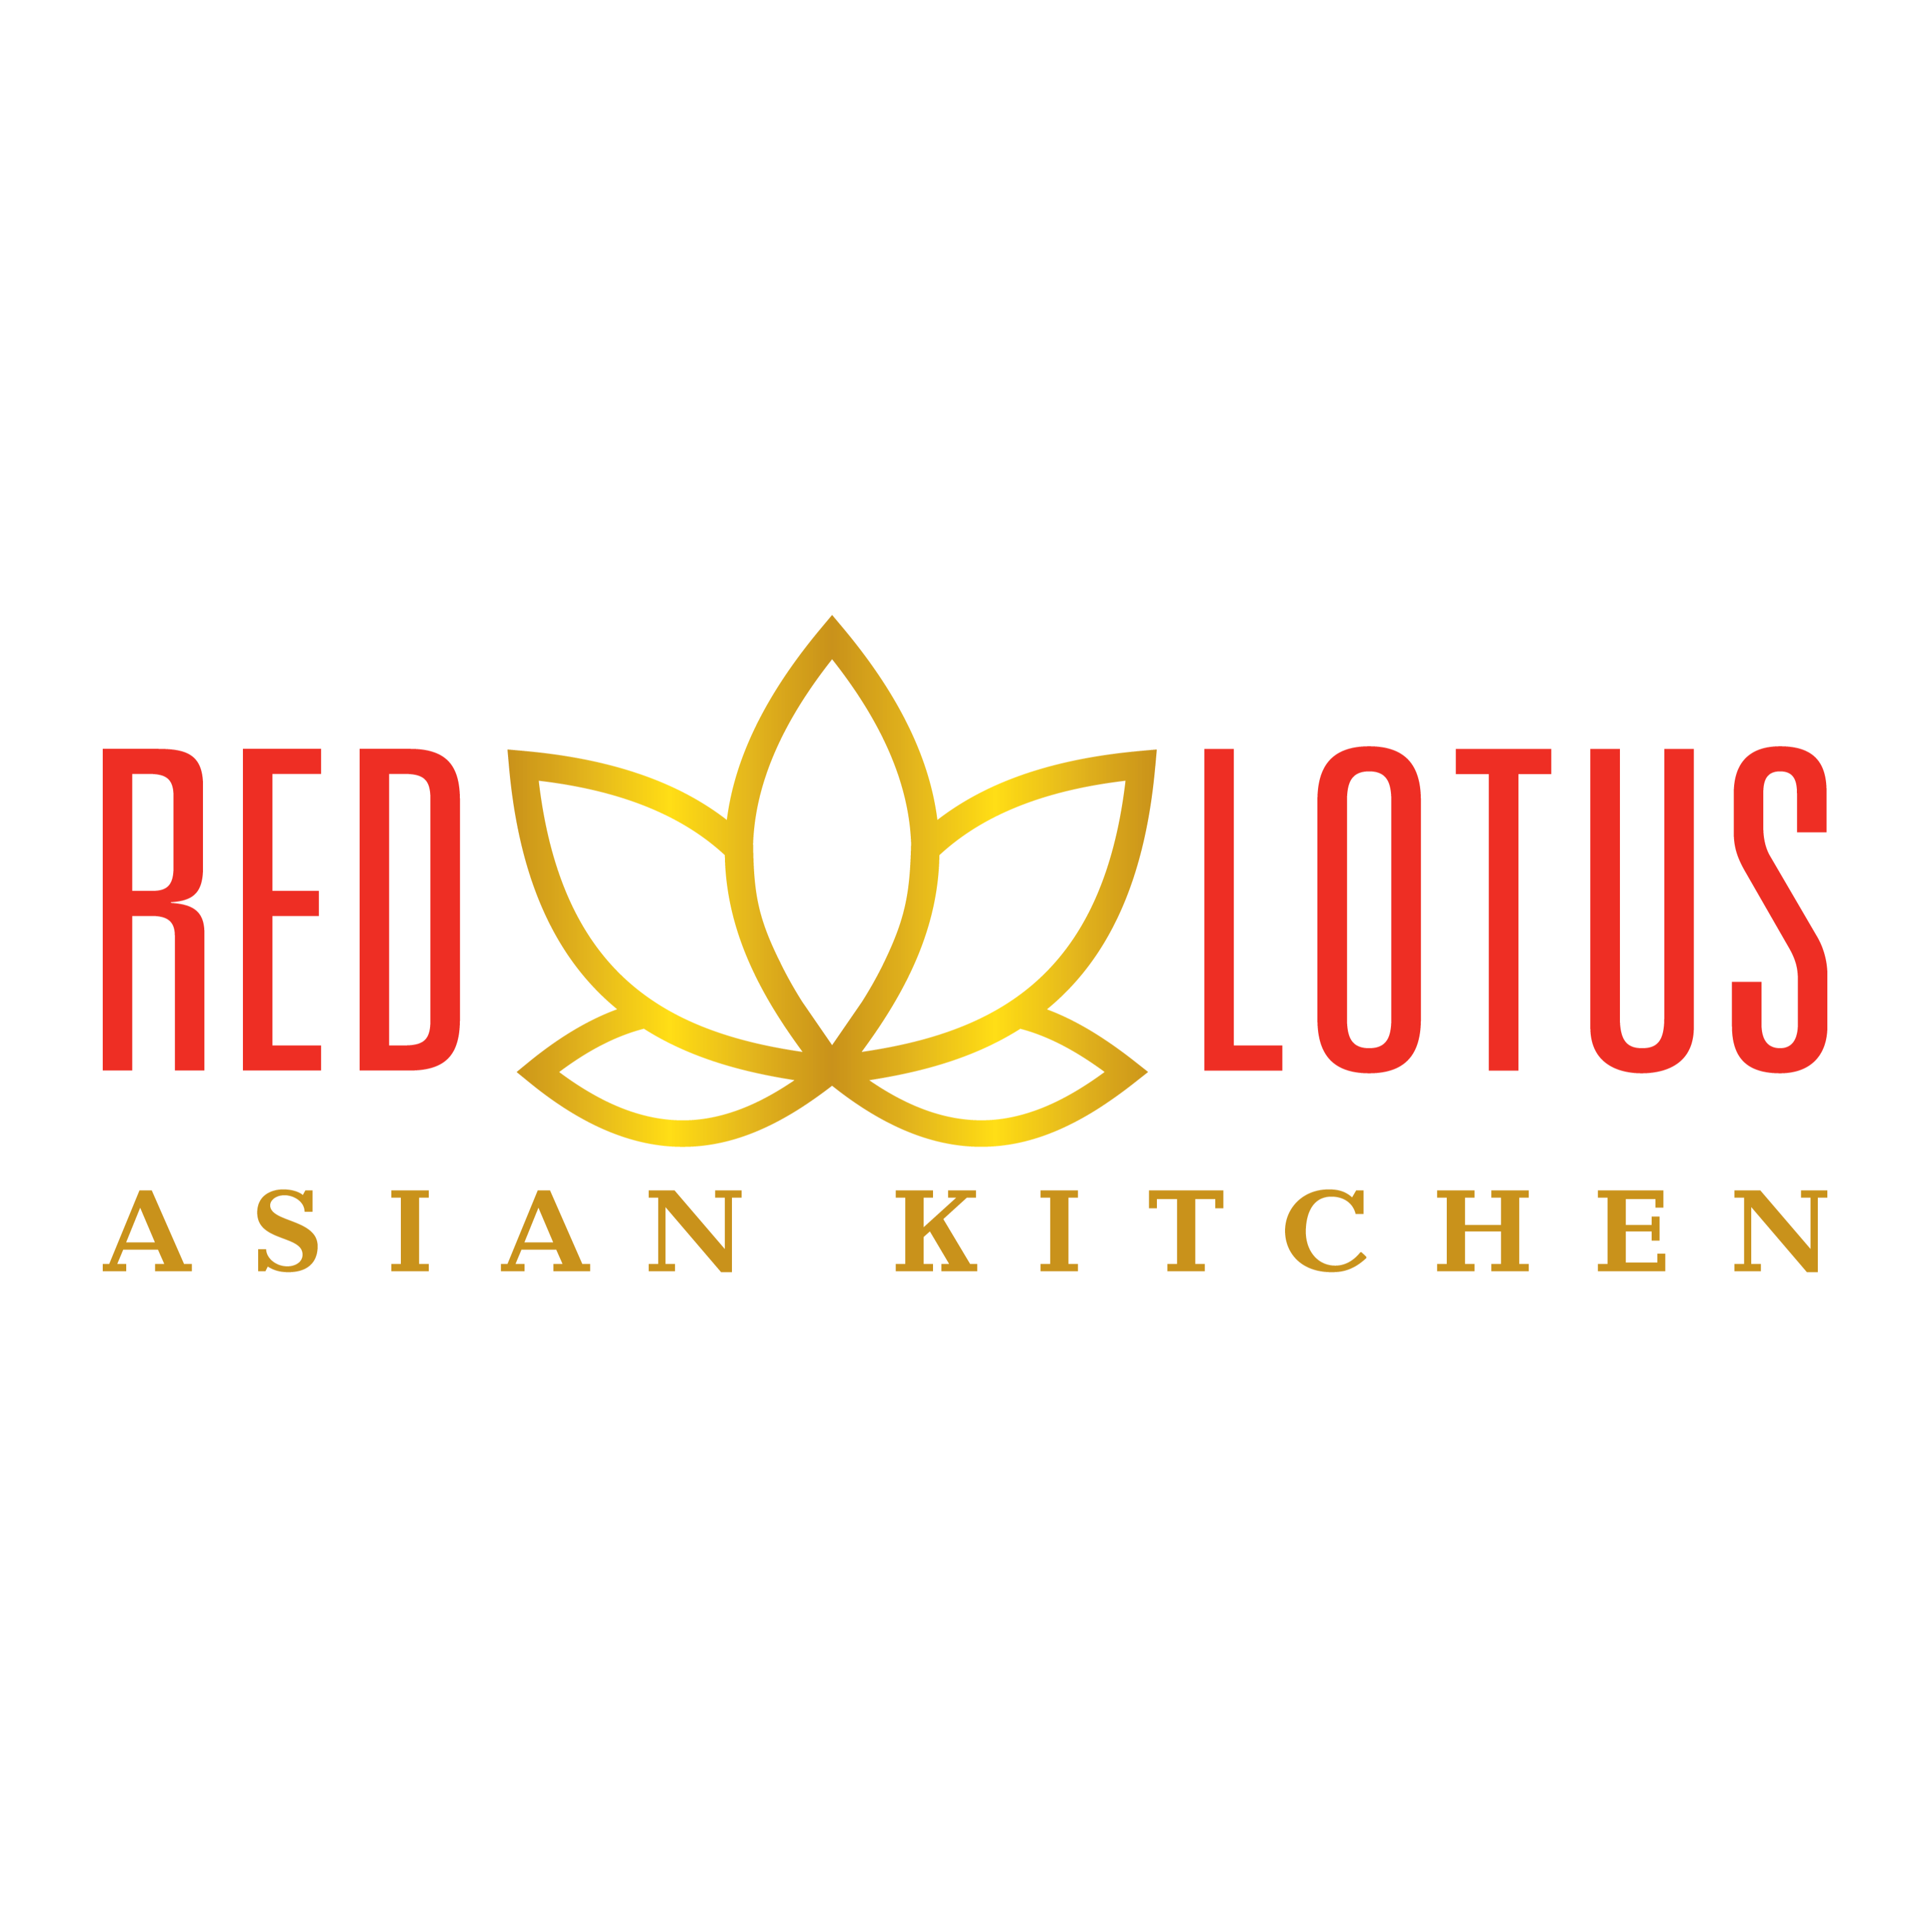 Red Lotus Asian Kitchen